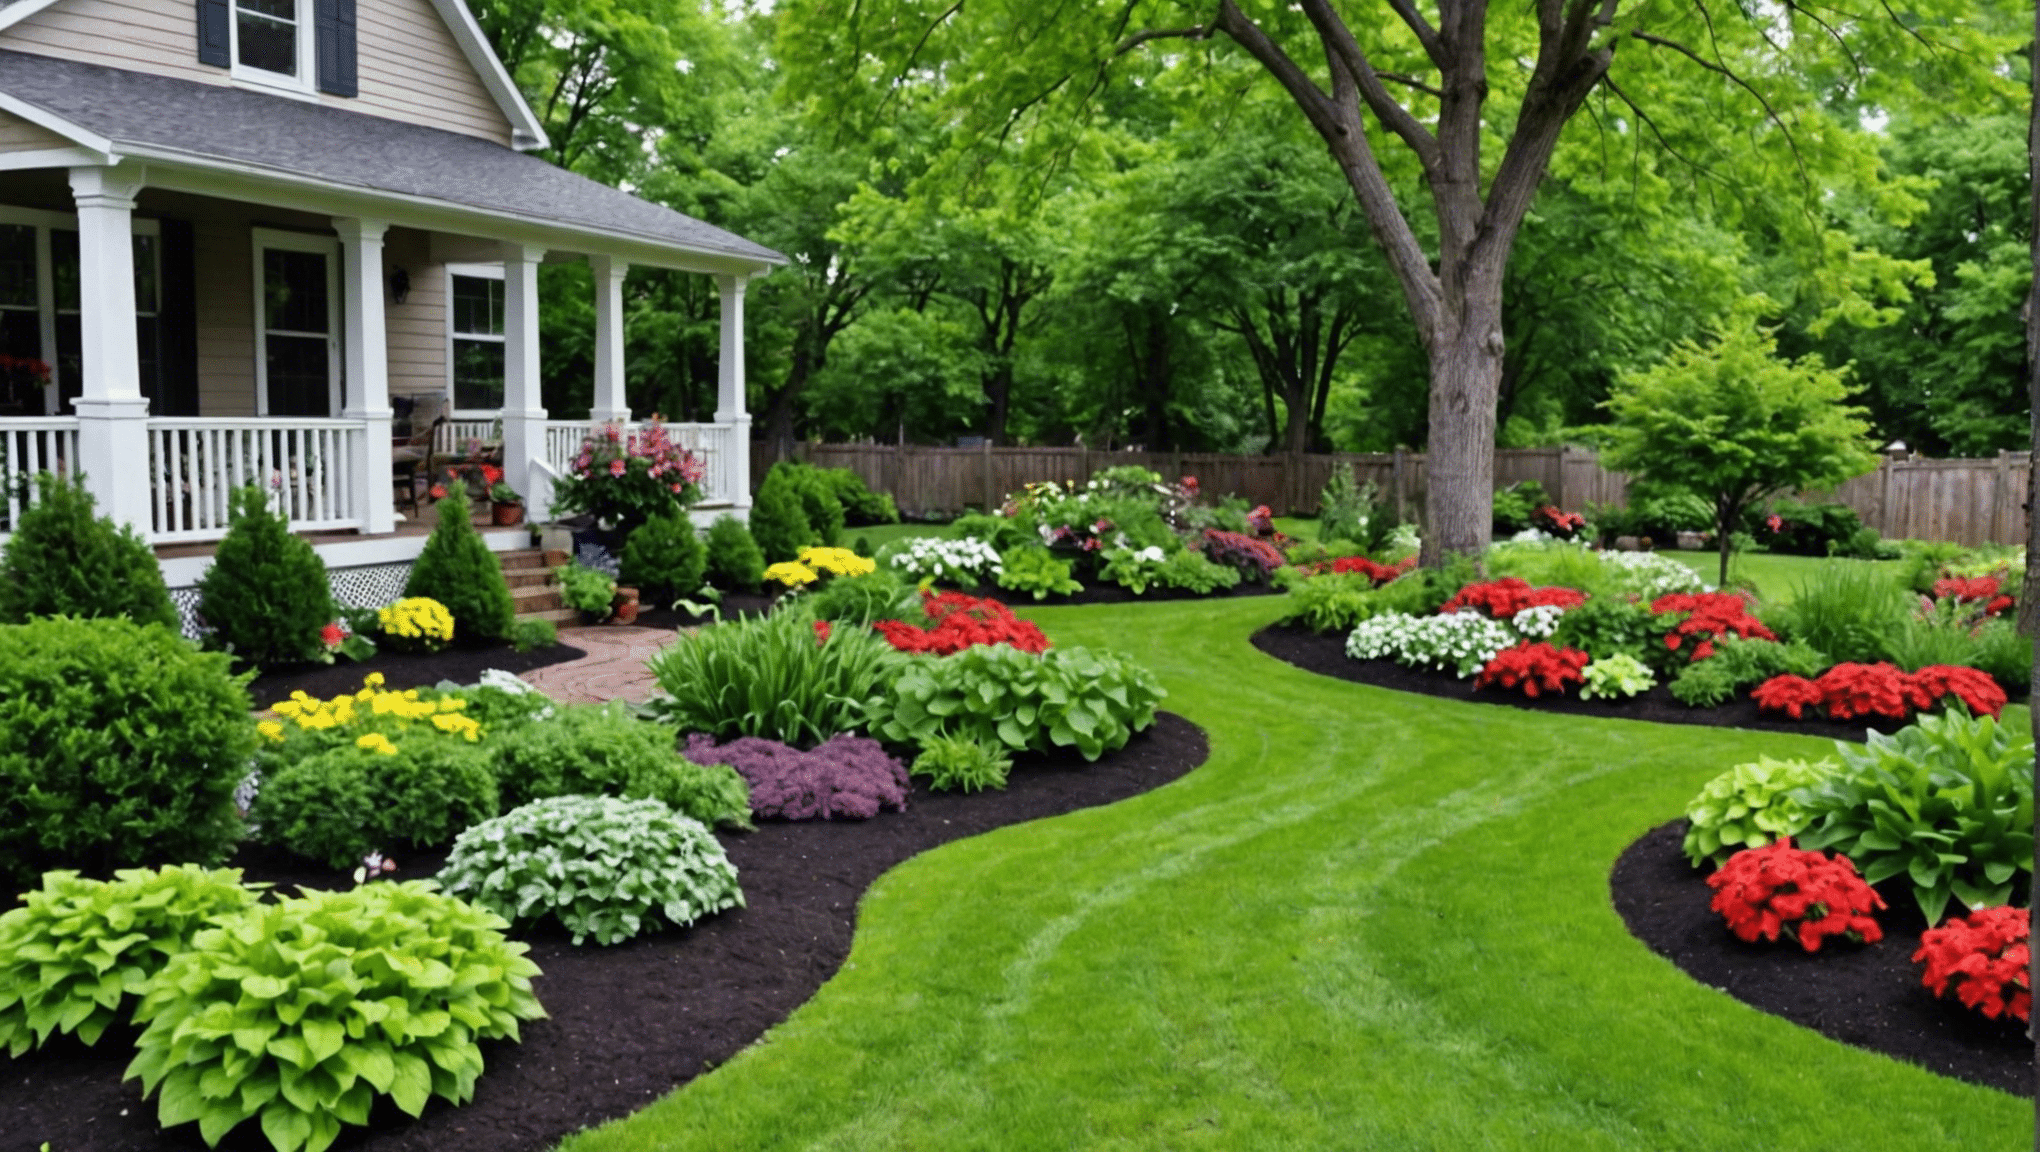 bliv inspireret med ideer til grøntsagshave i forhaven for at forvandle dit udendørs rum til en righoldig og smuk have.